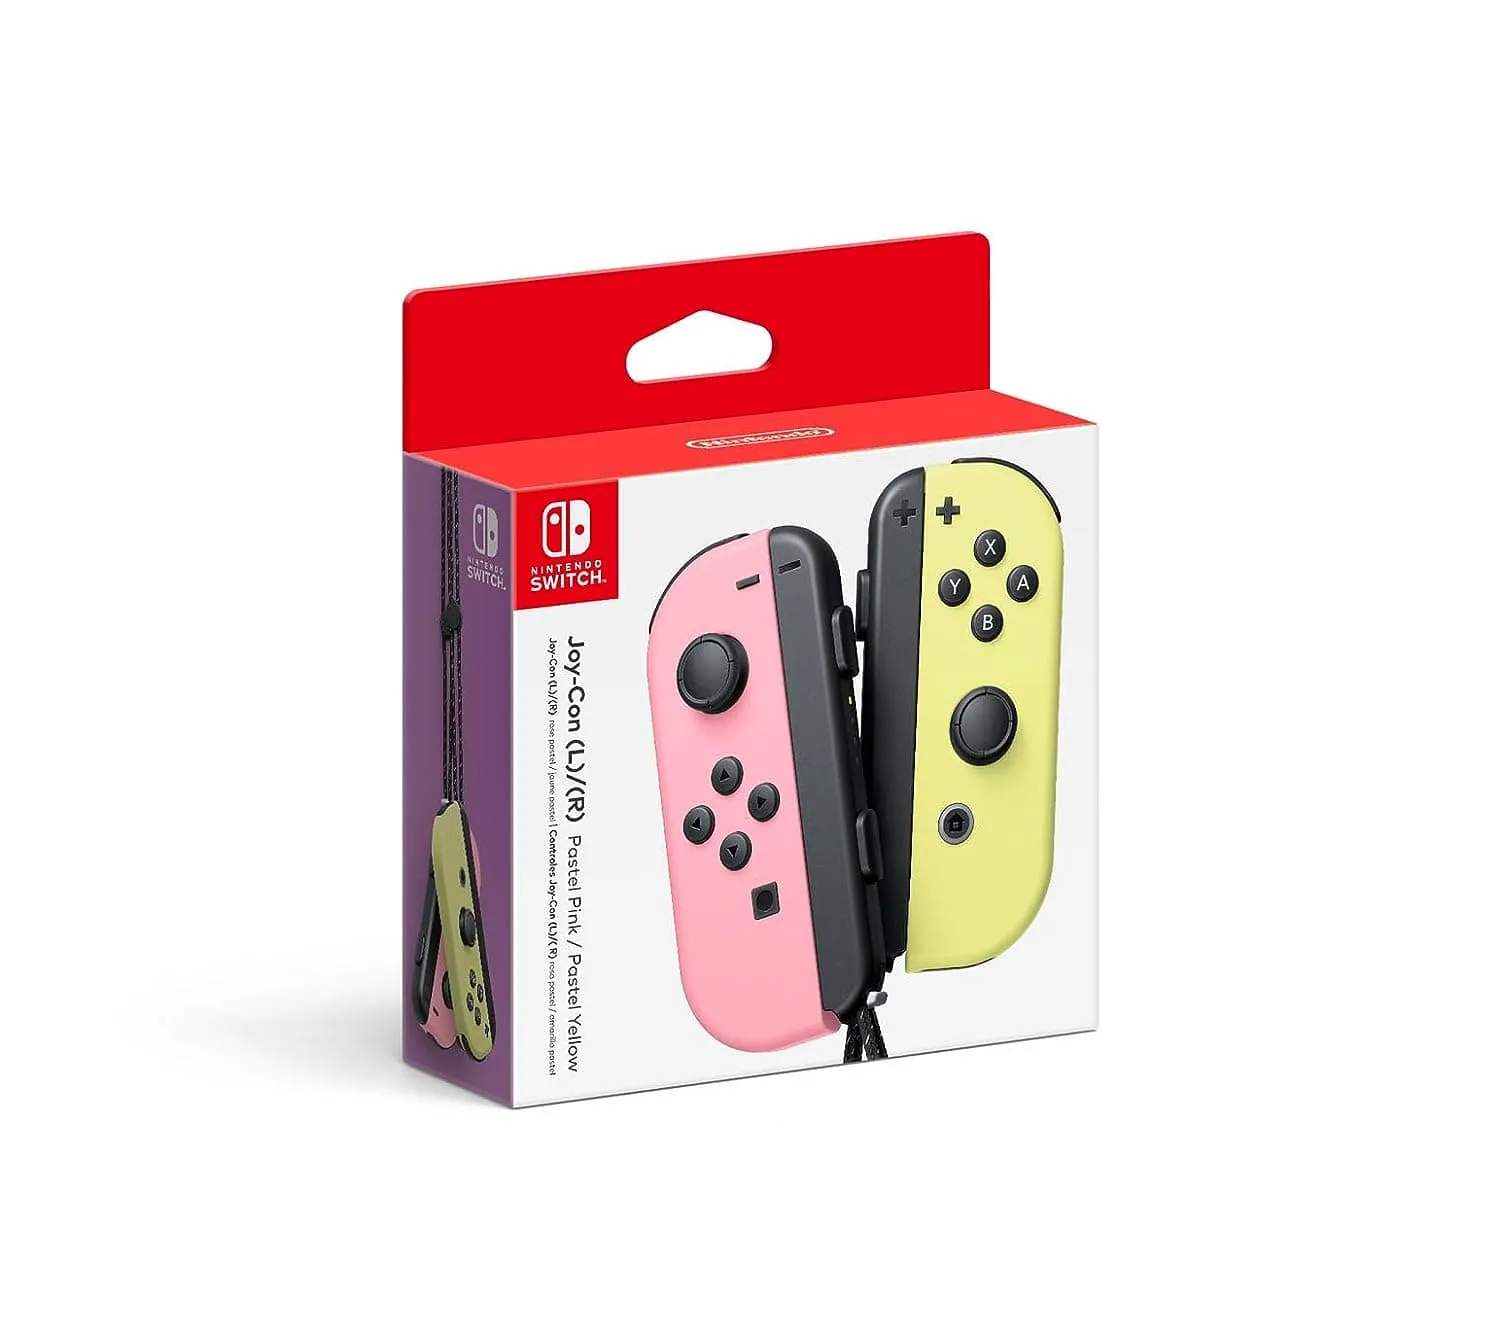 Nintendo Switch Joy-Con kontrollerid pastelsetes roosades ja pastellkollastes toonides.